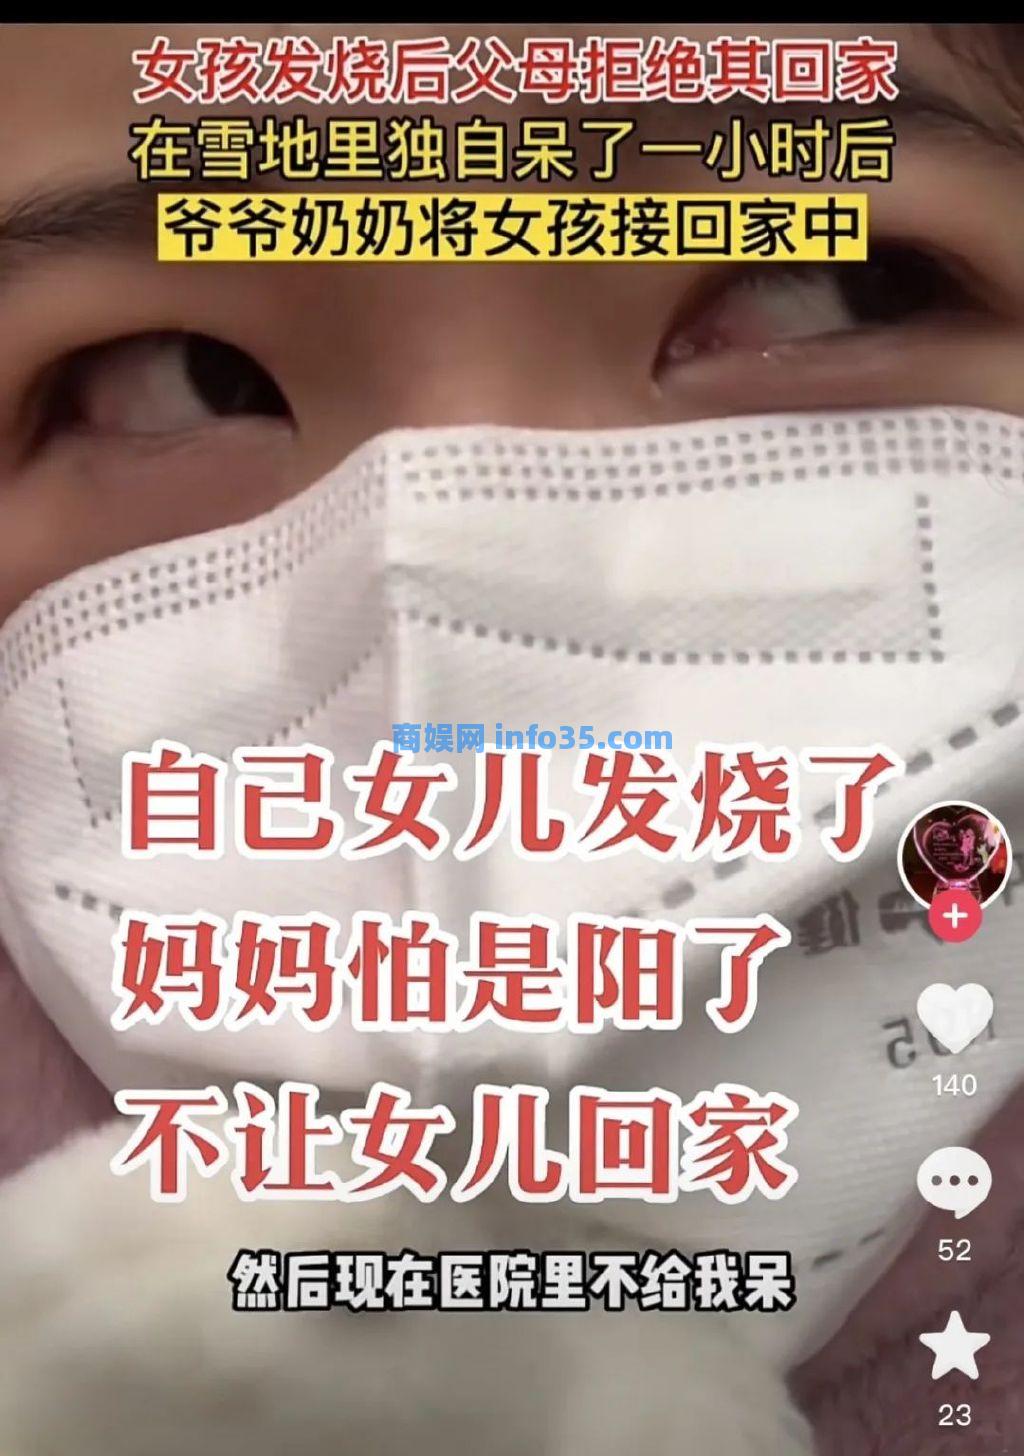 浙江又走了前面，杭州疫情防控发布会上宣布： 无症状、轻症人员可申请集中隔离。